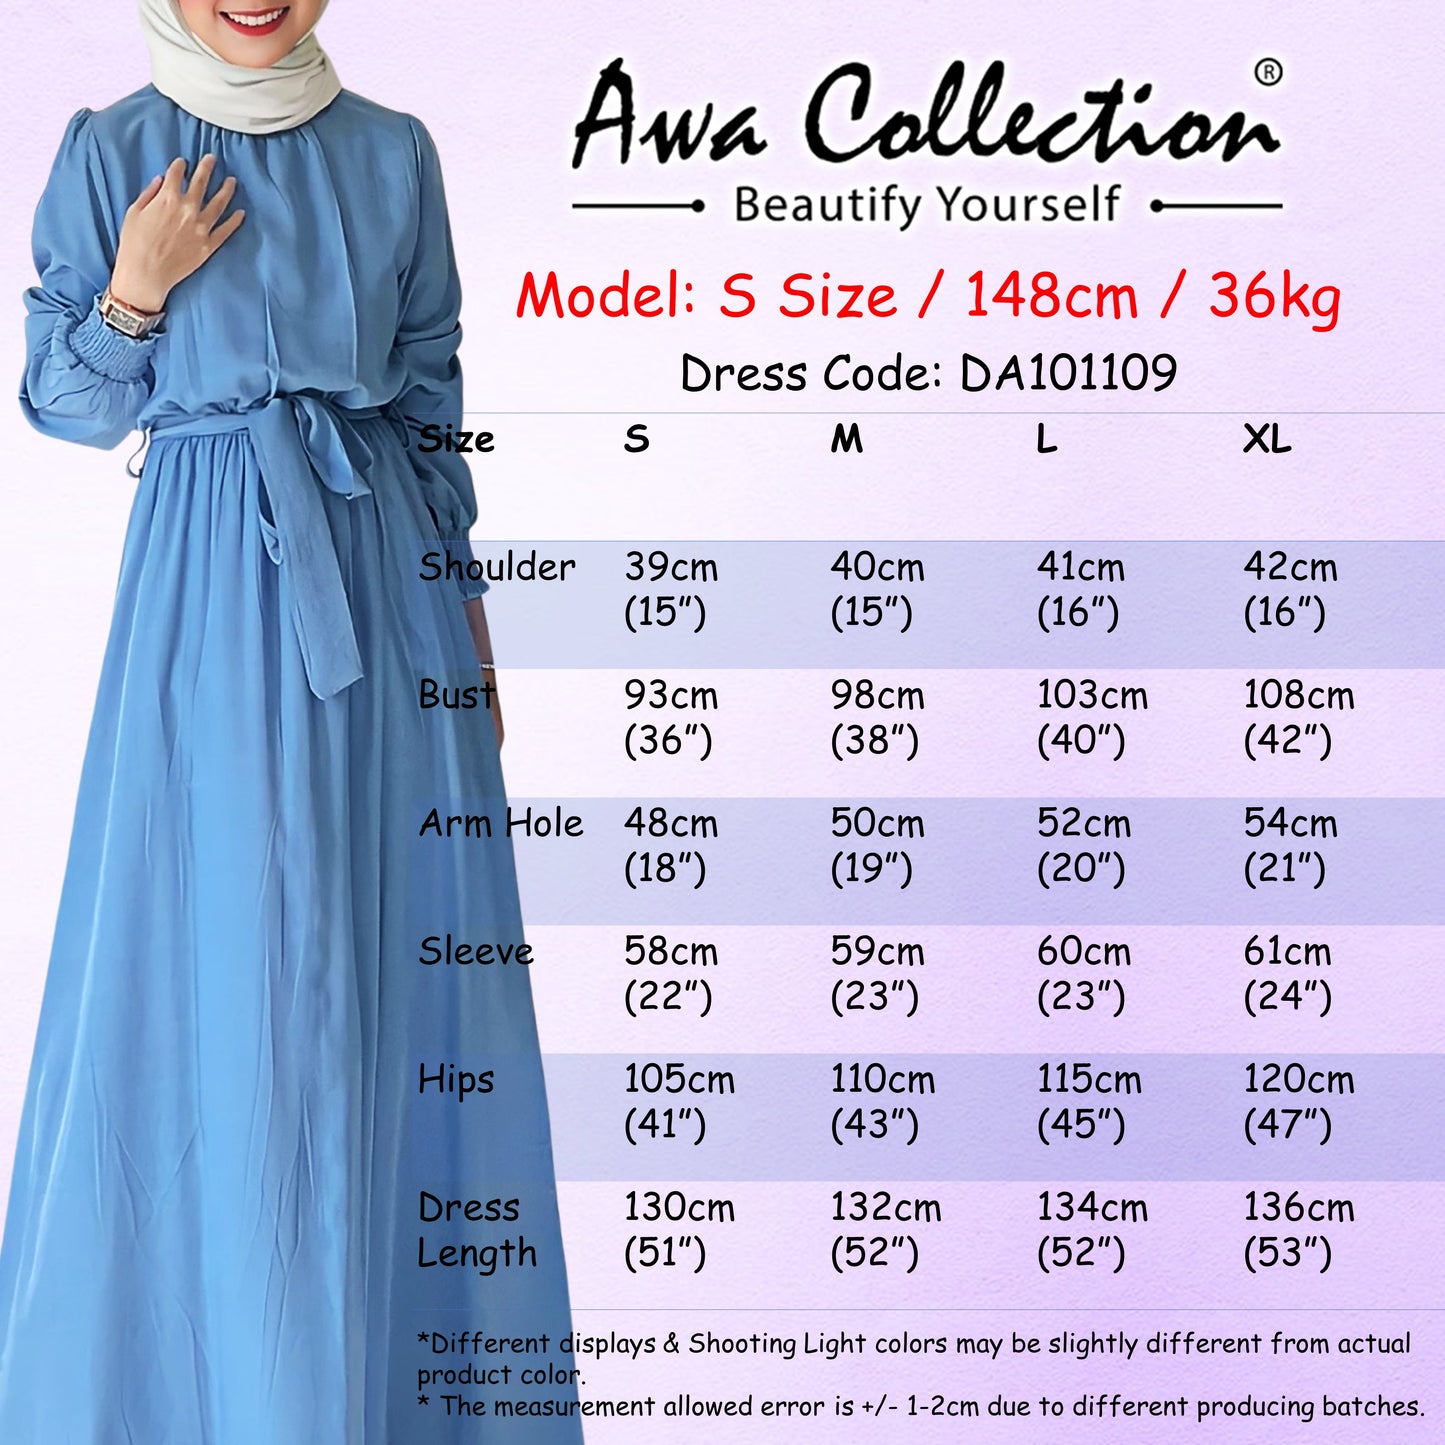 LALEESA Awa Collection DA101109 DRESS LAMIYA Plain Colour Belted Long Dress Muslimah Dress Women Dress Maxi Dress